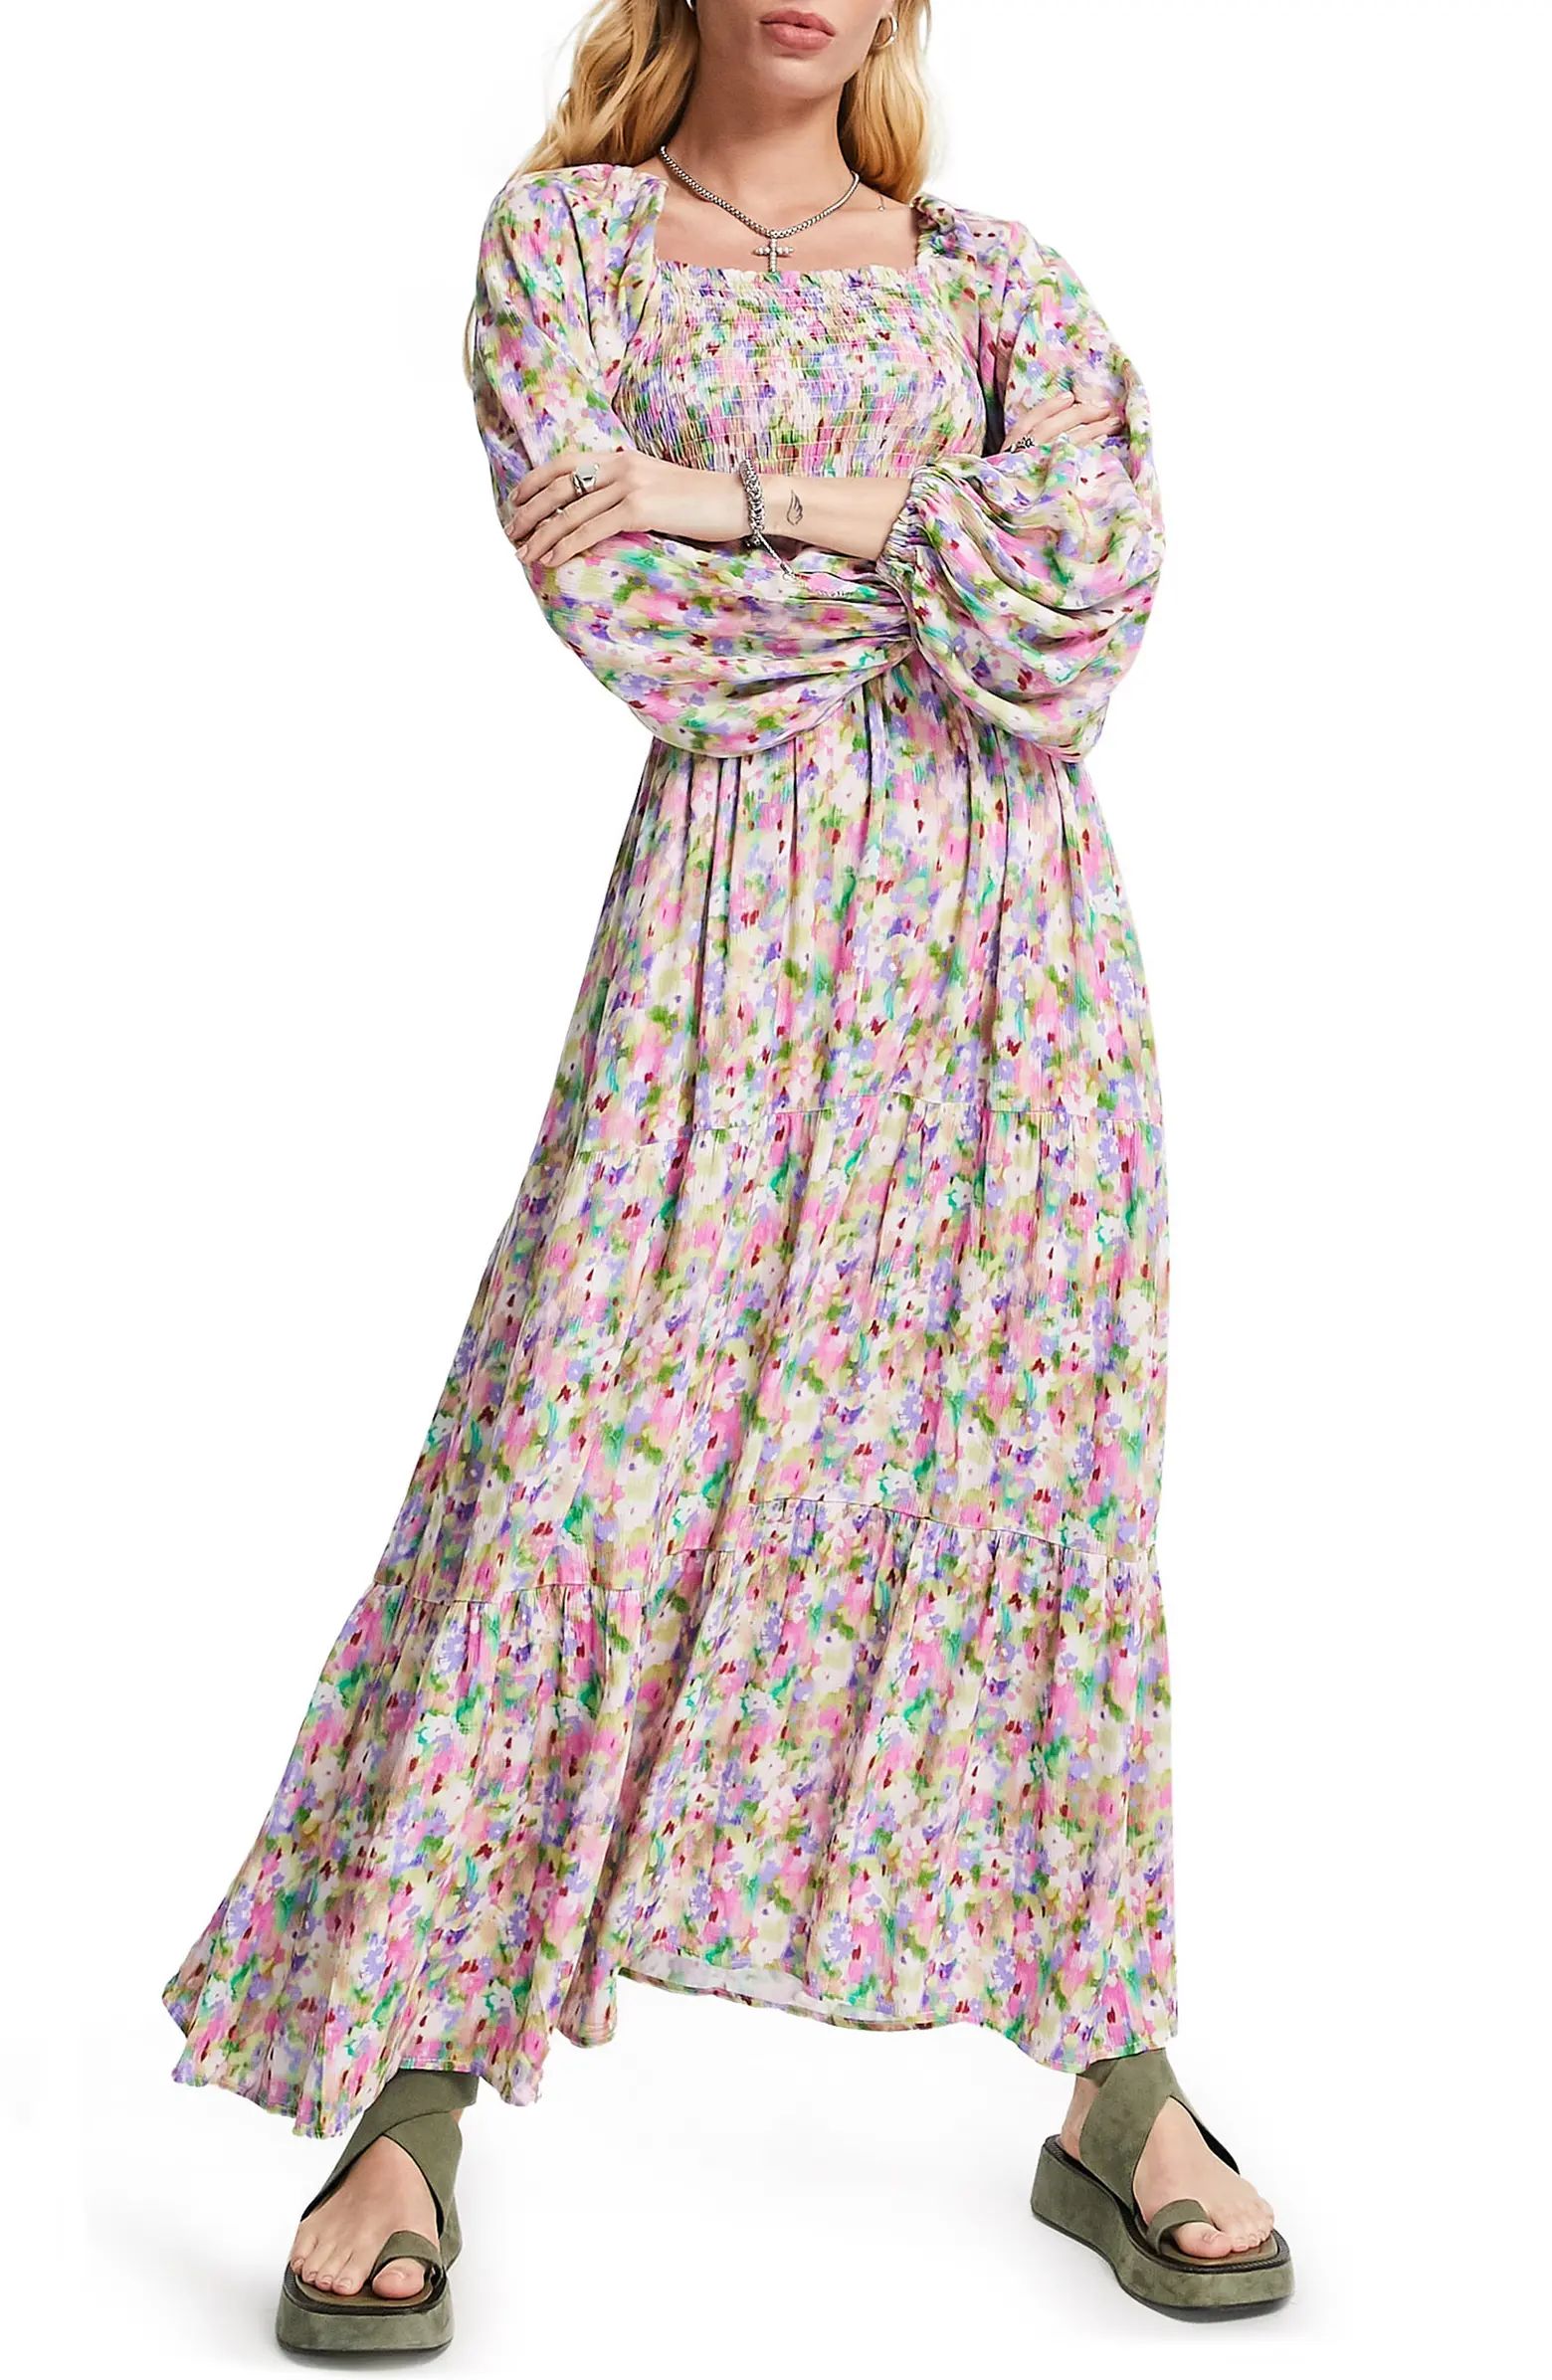 Topshop Blurred Floral Print Long Sleeve Dress | Nordstrom | Nordstrom